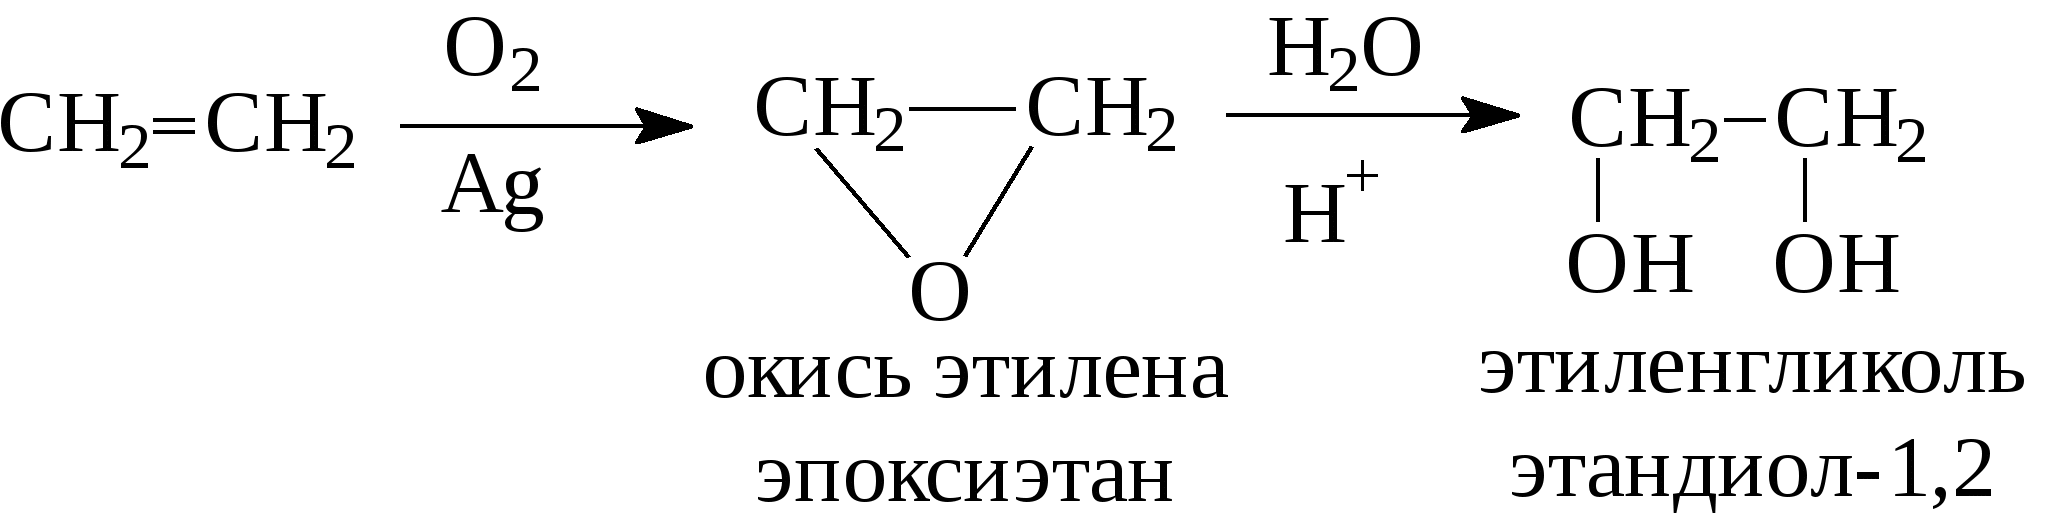 Окись этилена реакции. Реакция получения окиси этилена. Реакция гидратации окиси этилена. Этиленгликоль из оксида этилена.